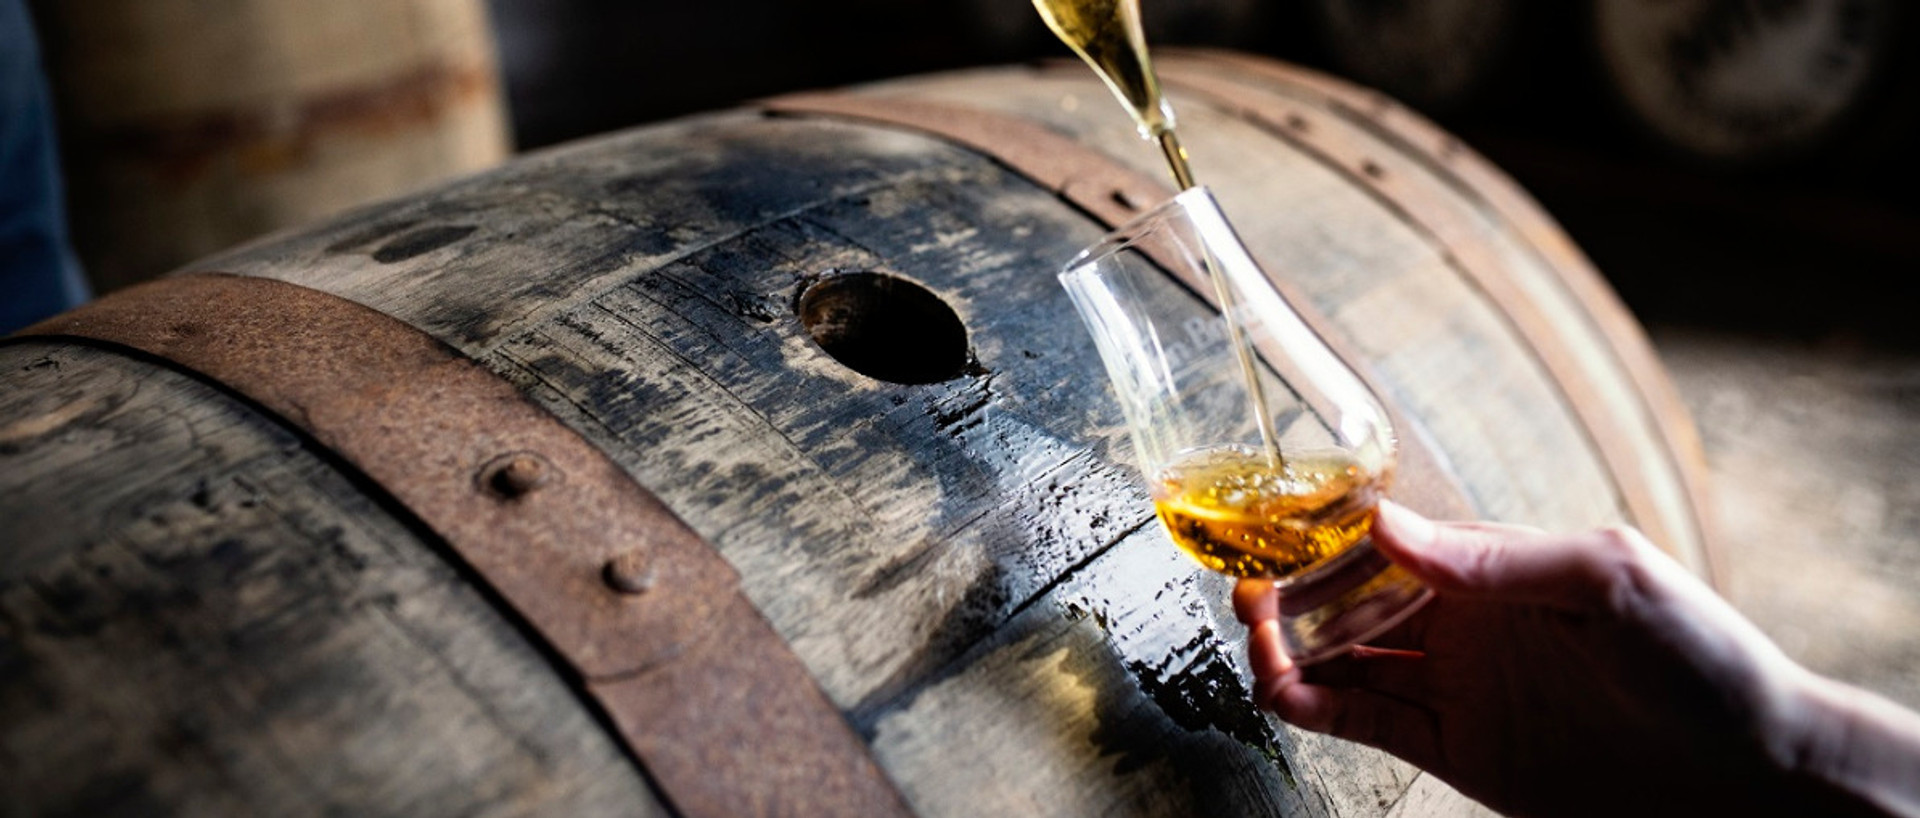 Taking sample of Glen Breton Whisky from barrel